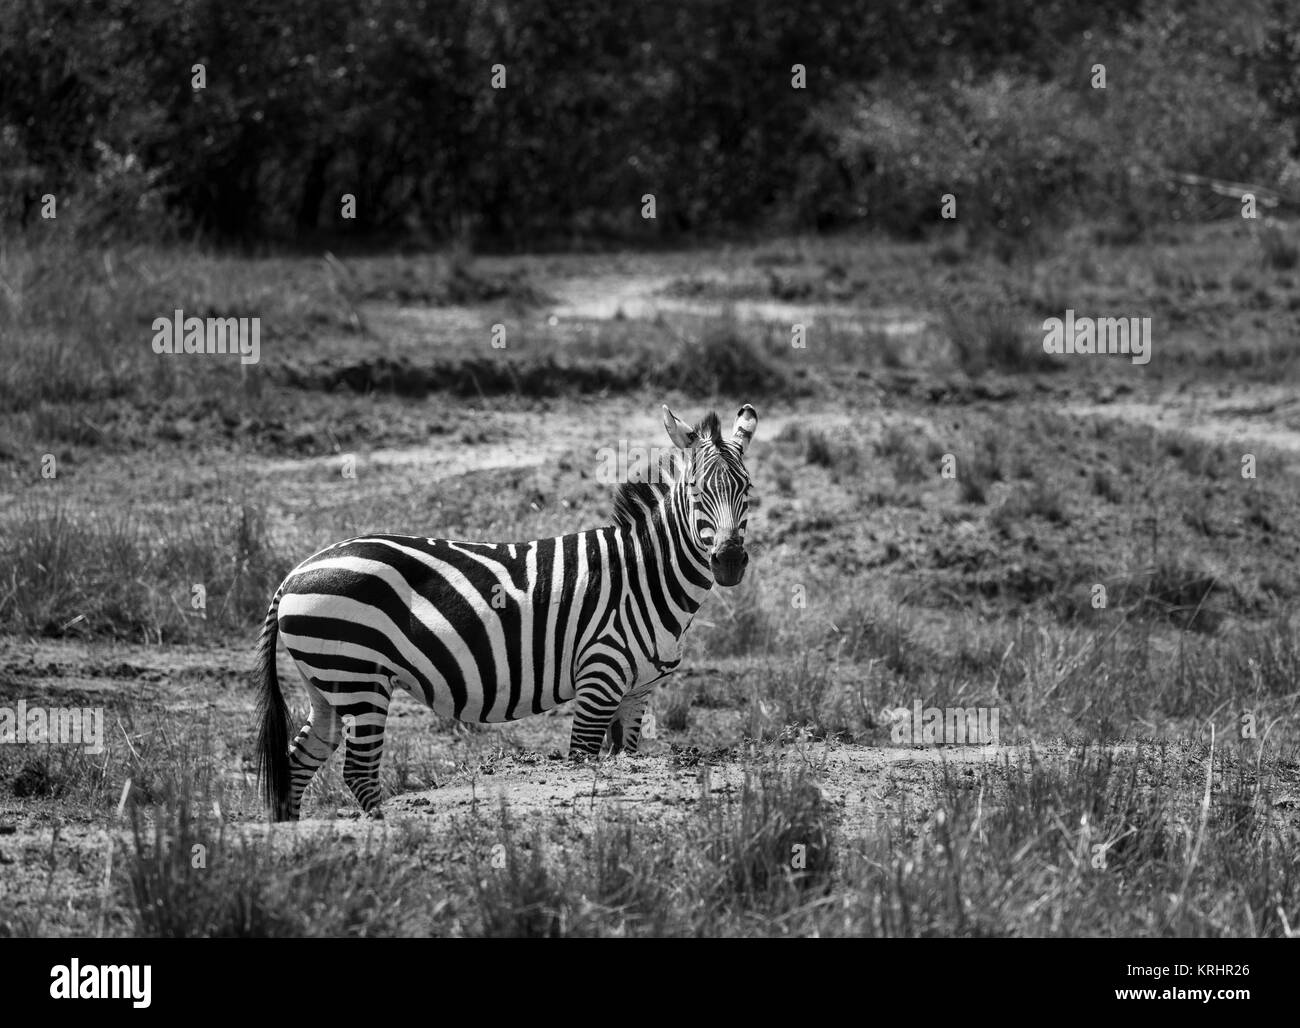 Burchells zebra or plains zebra (Equus burchellii) standing in savannah, Masai Mara, Kenya, east Africa Stock Photo